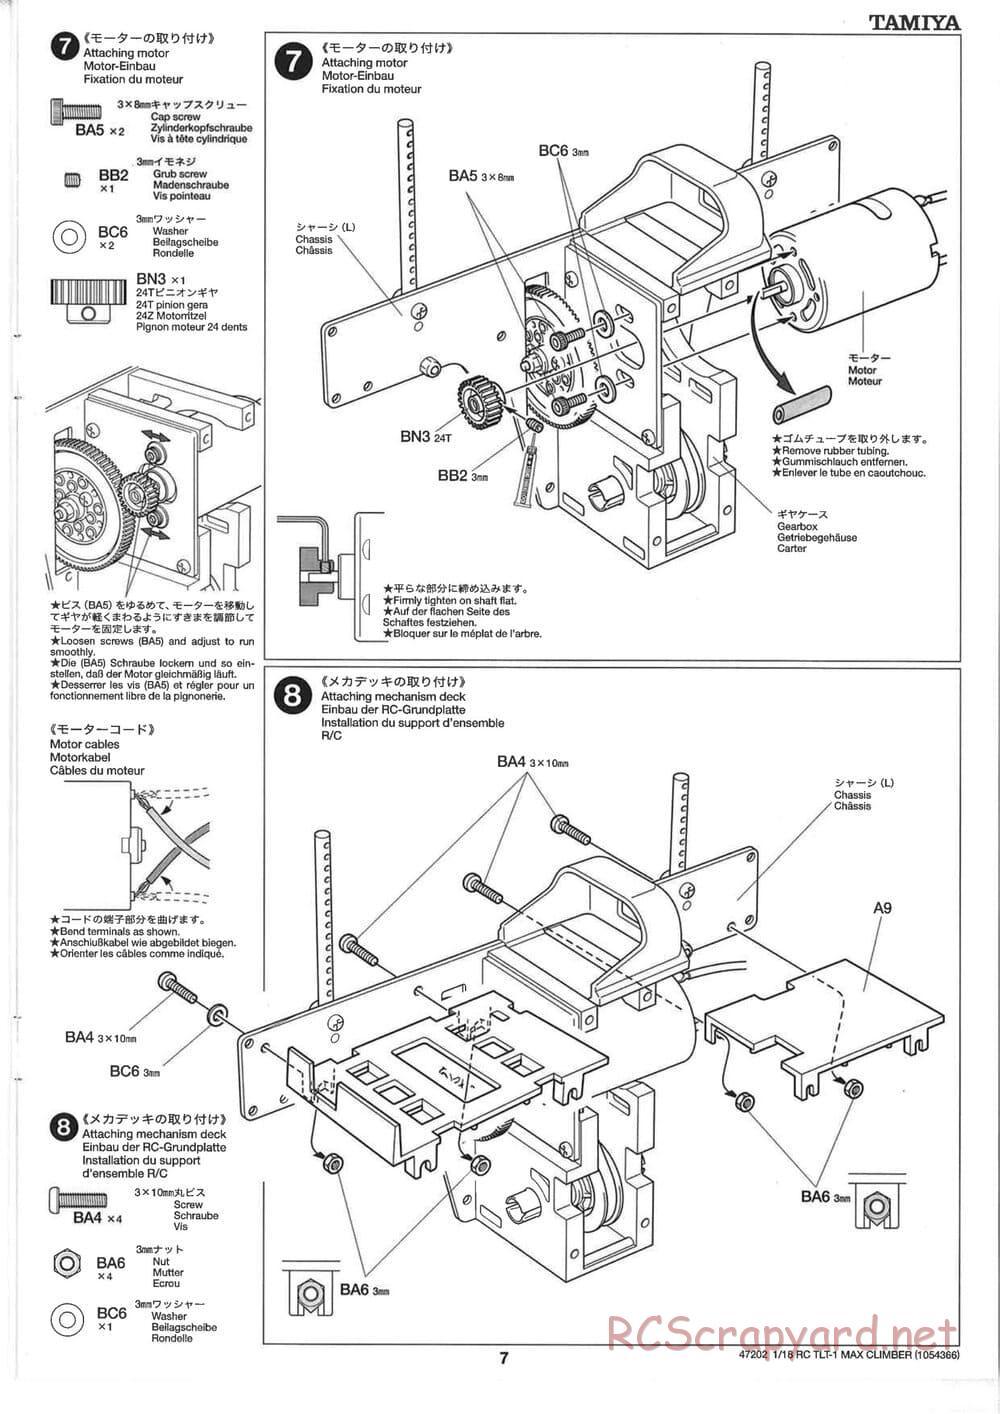 Tamiya - Max Climber - TLT-1 Chassis - Manual - Page 7